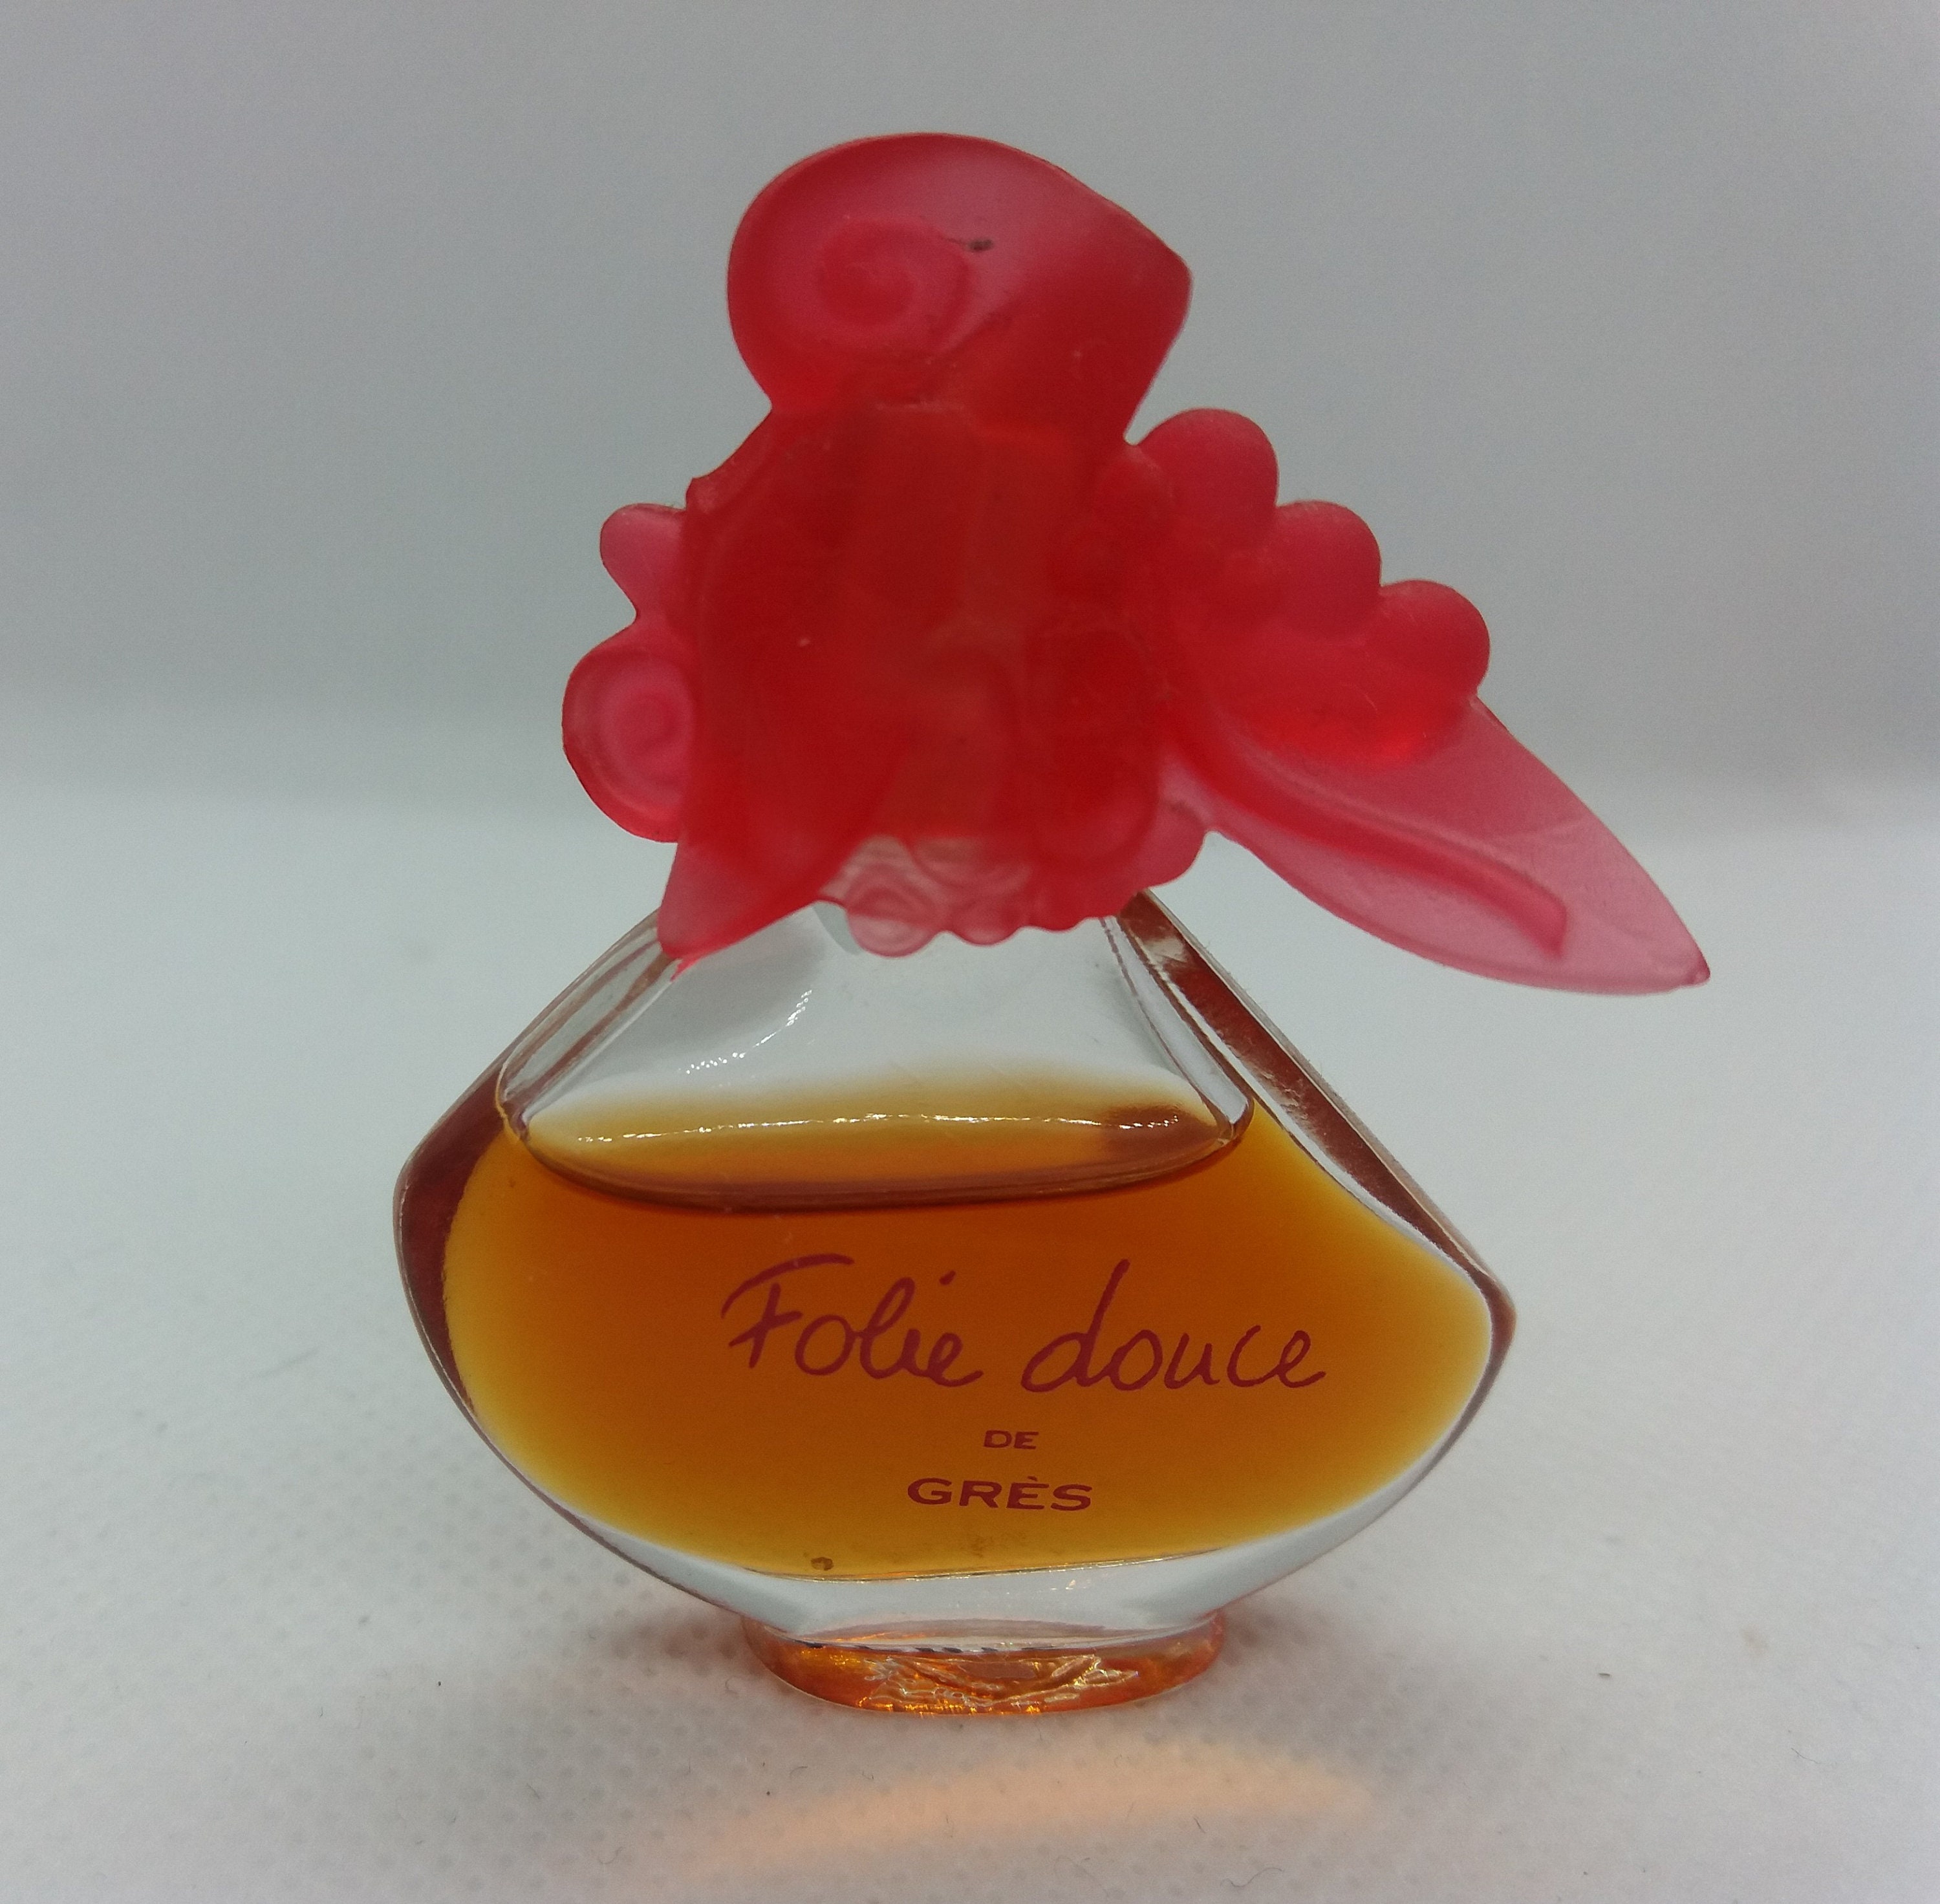 Folie Douce By Gres Eau De Parfum Perfume Miniature Parfum Profumo Mini Mignon 5ml 017 Oz 1997 Collectible Bottle Full Woman Perfume - 